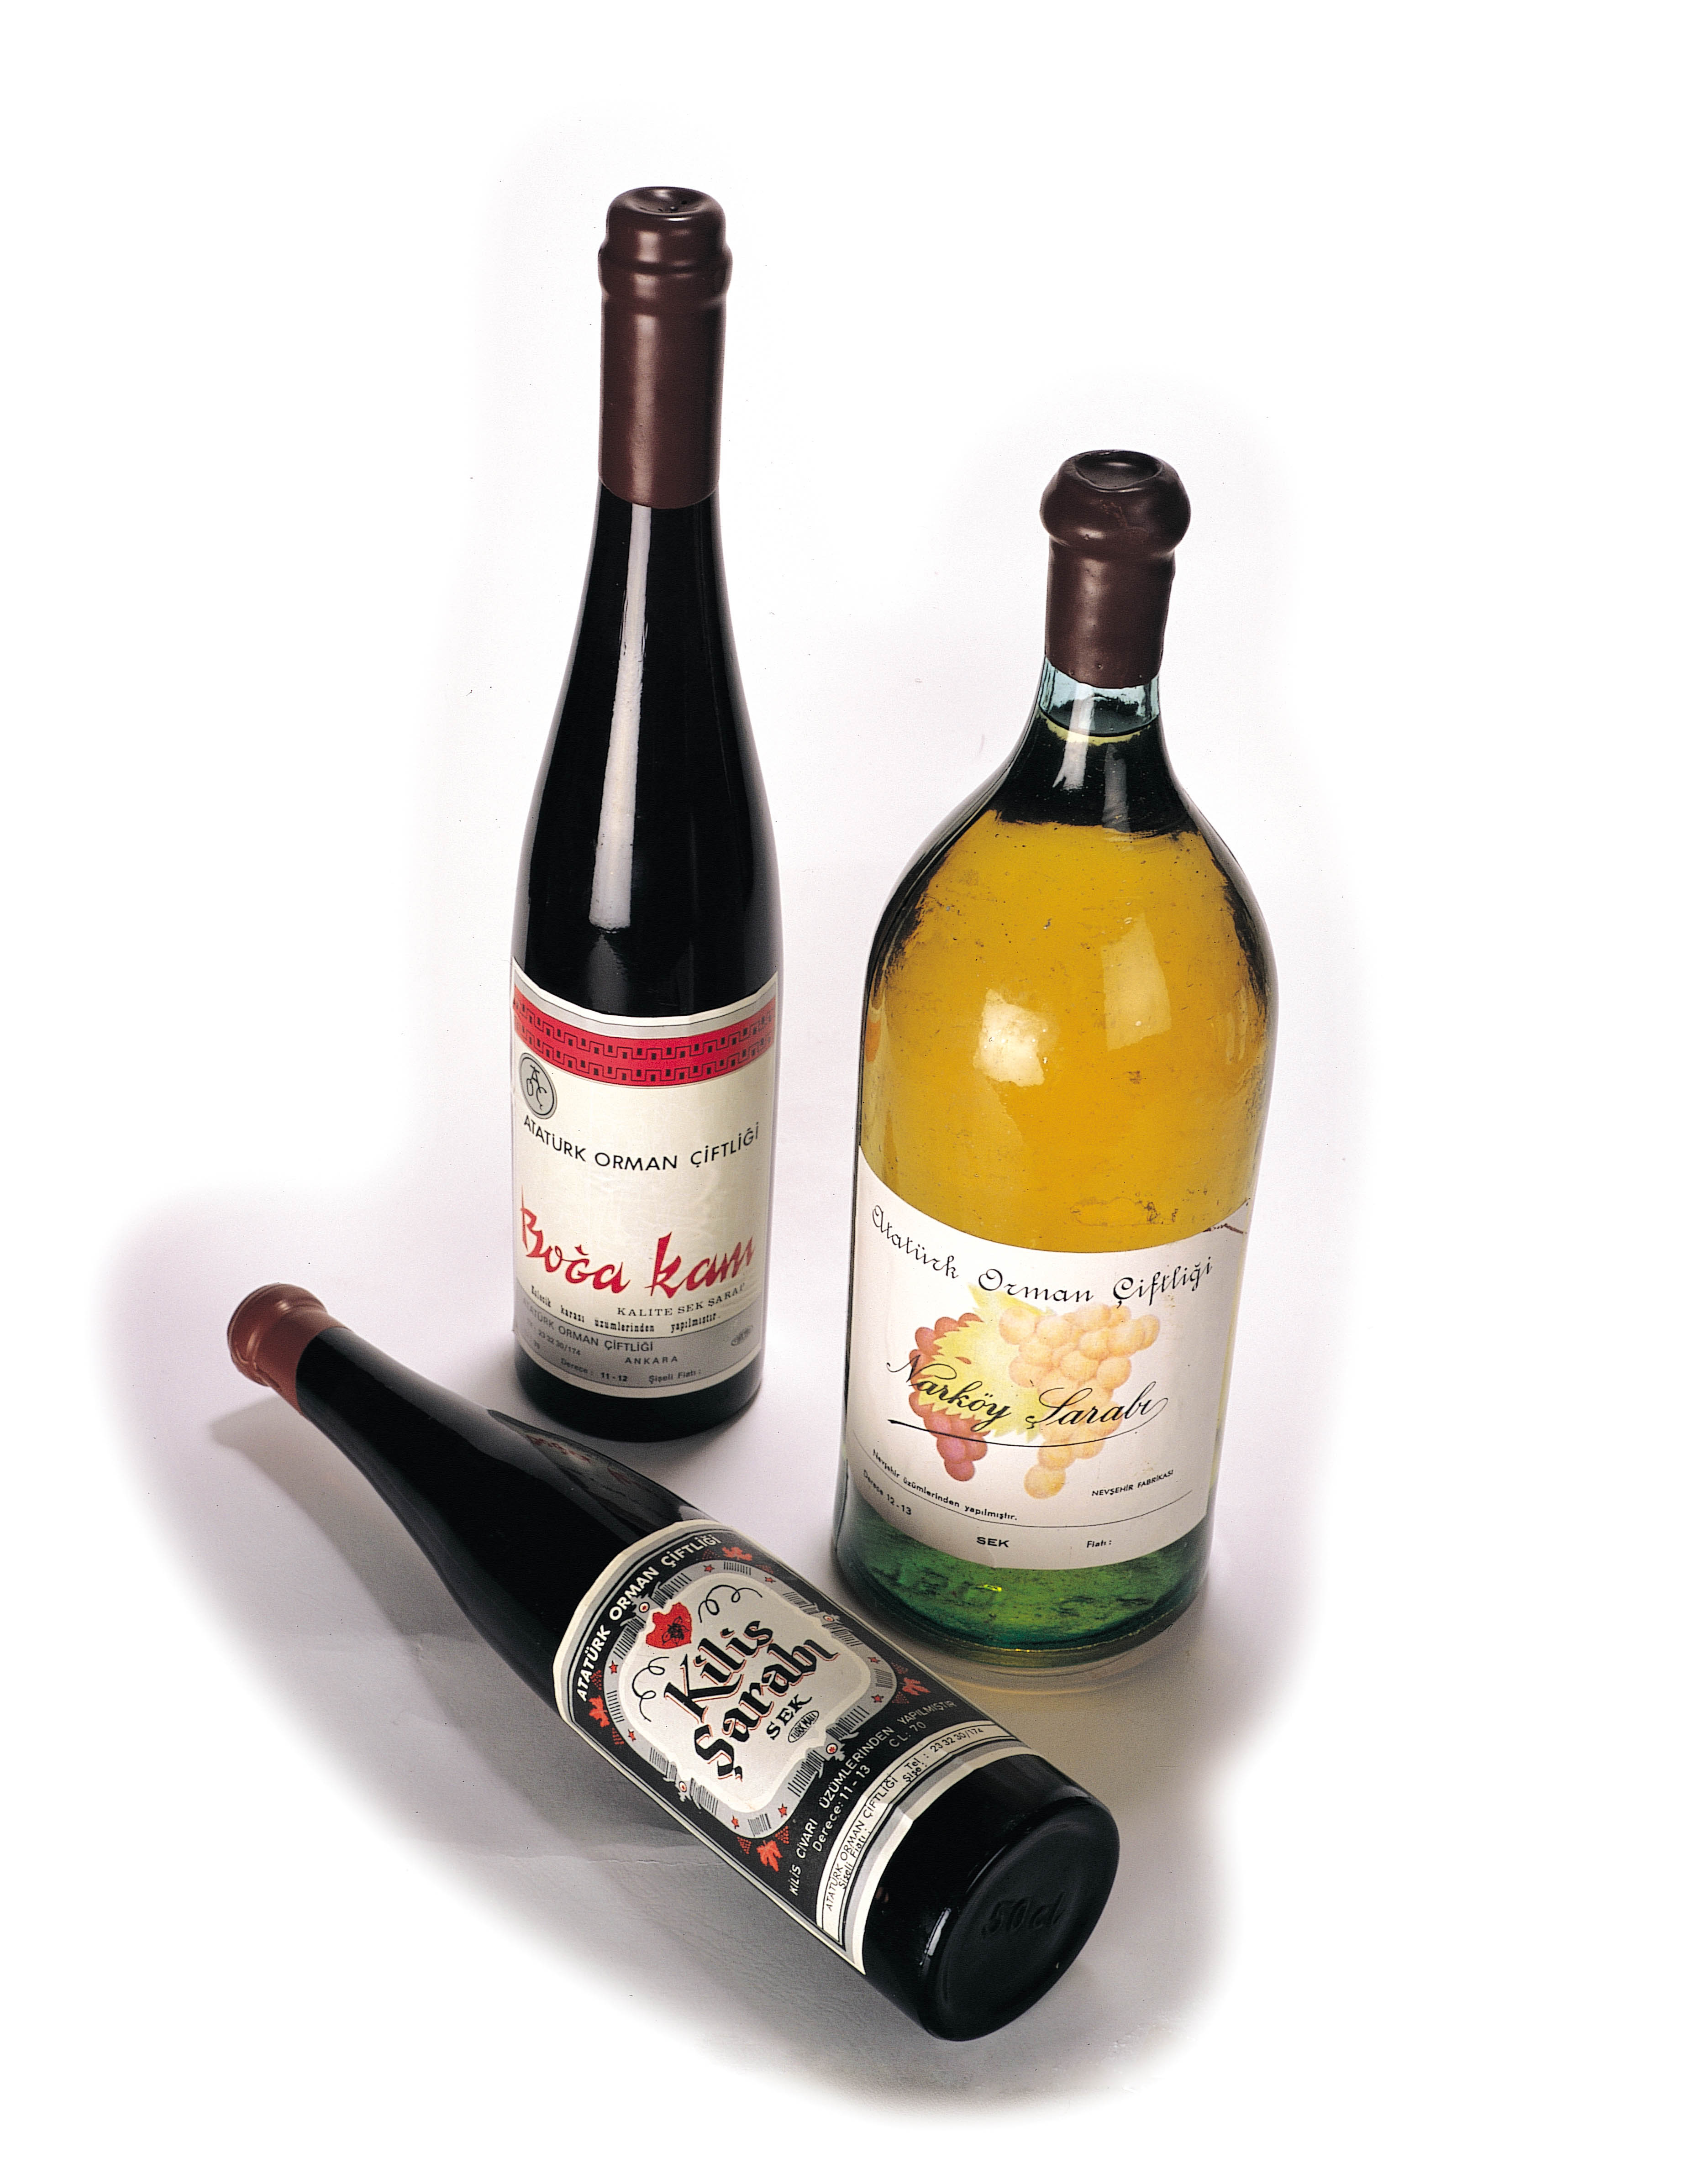 Atatürk Orman Çiftliği'nin Horozkarası üzümünden Kilis şarabı da tarihe karışan şaraplarımızdan.